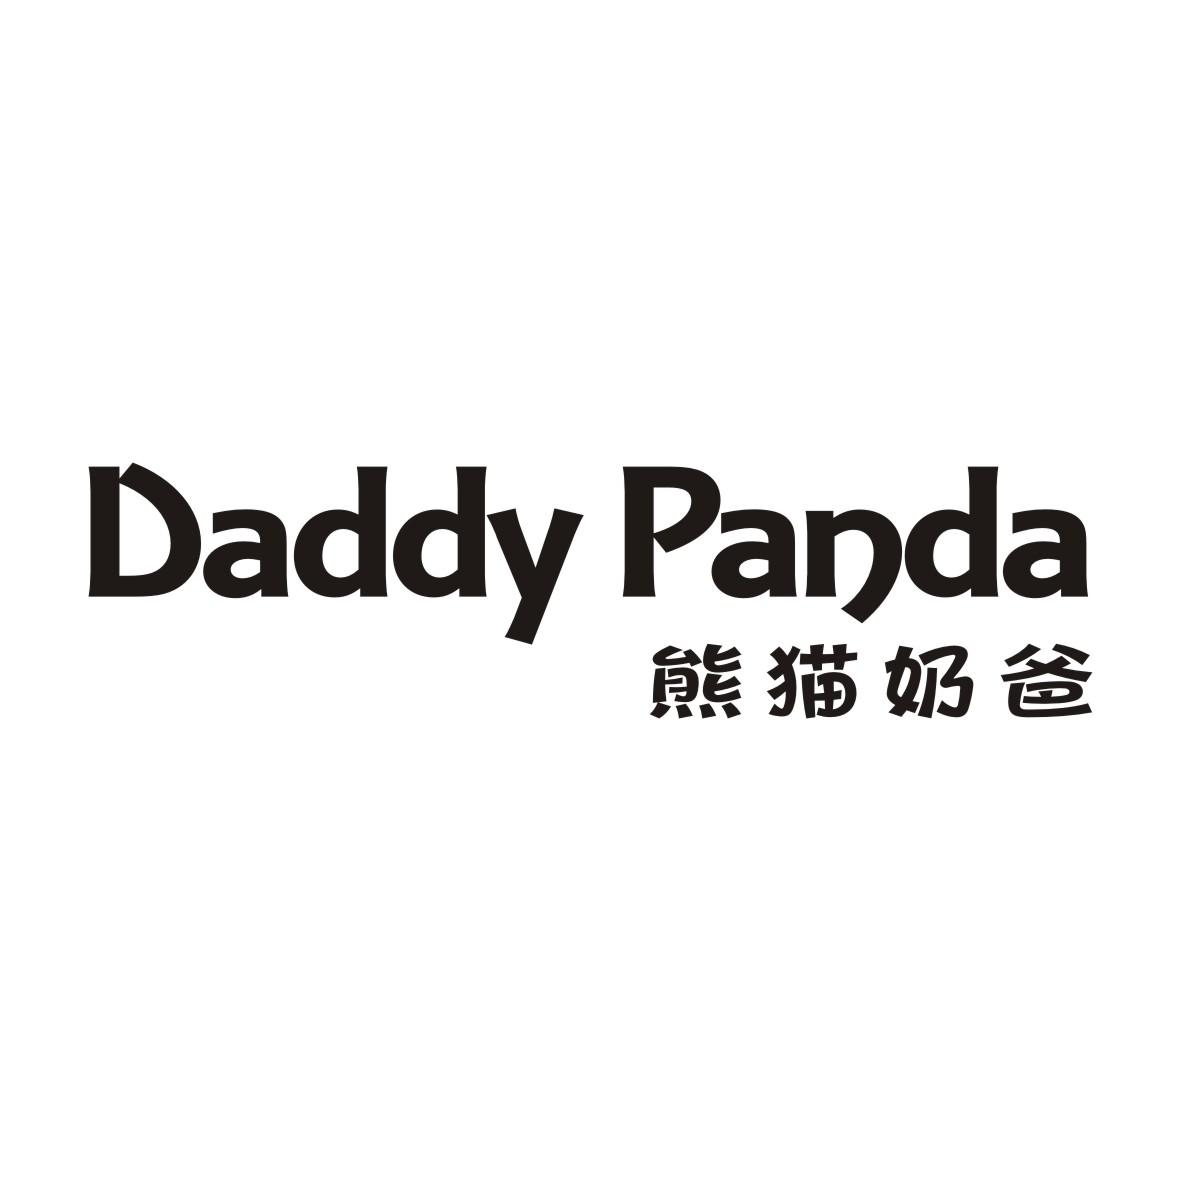 熊猫奶爸 DADDY PANDA